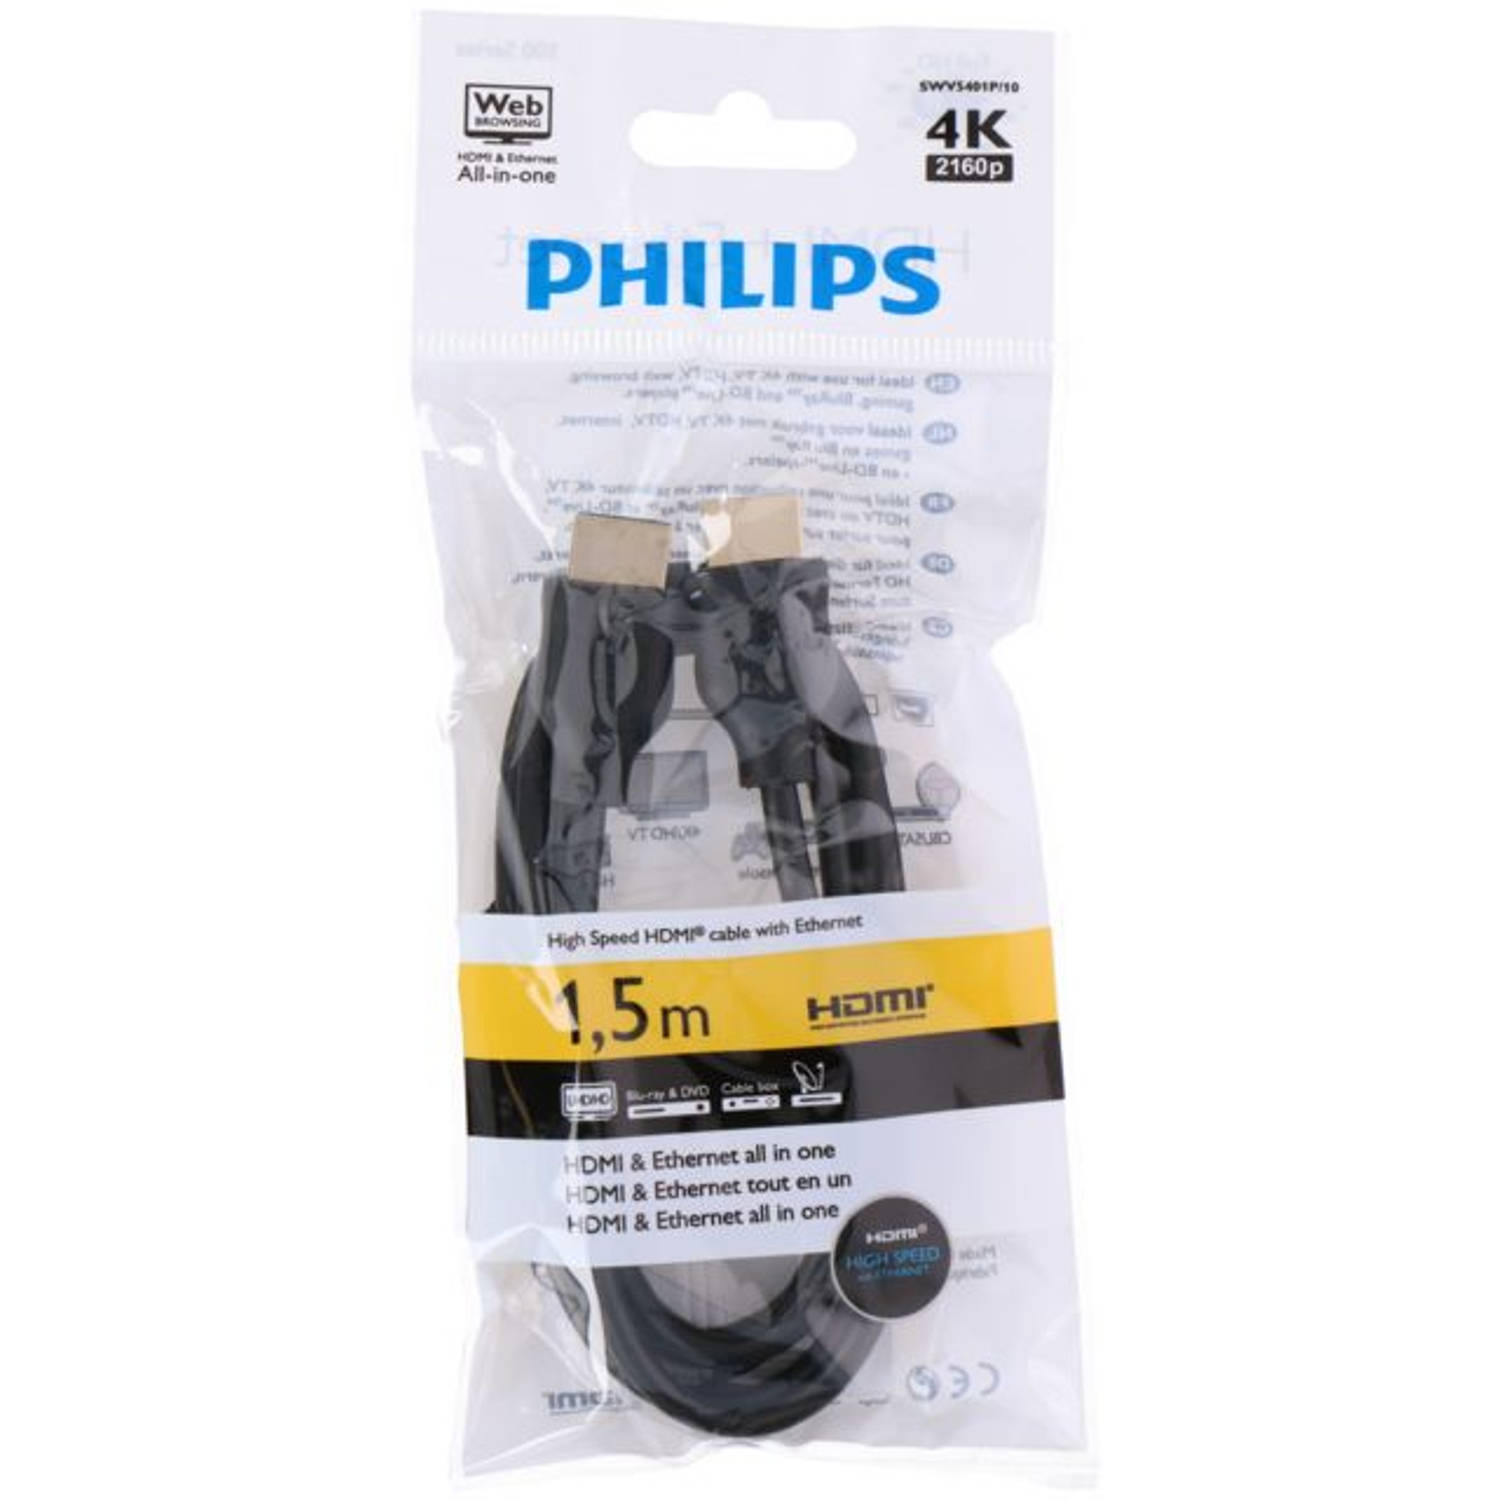 Philips HDMI Kabel + Ethernet 4K 2160p 1,5M